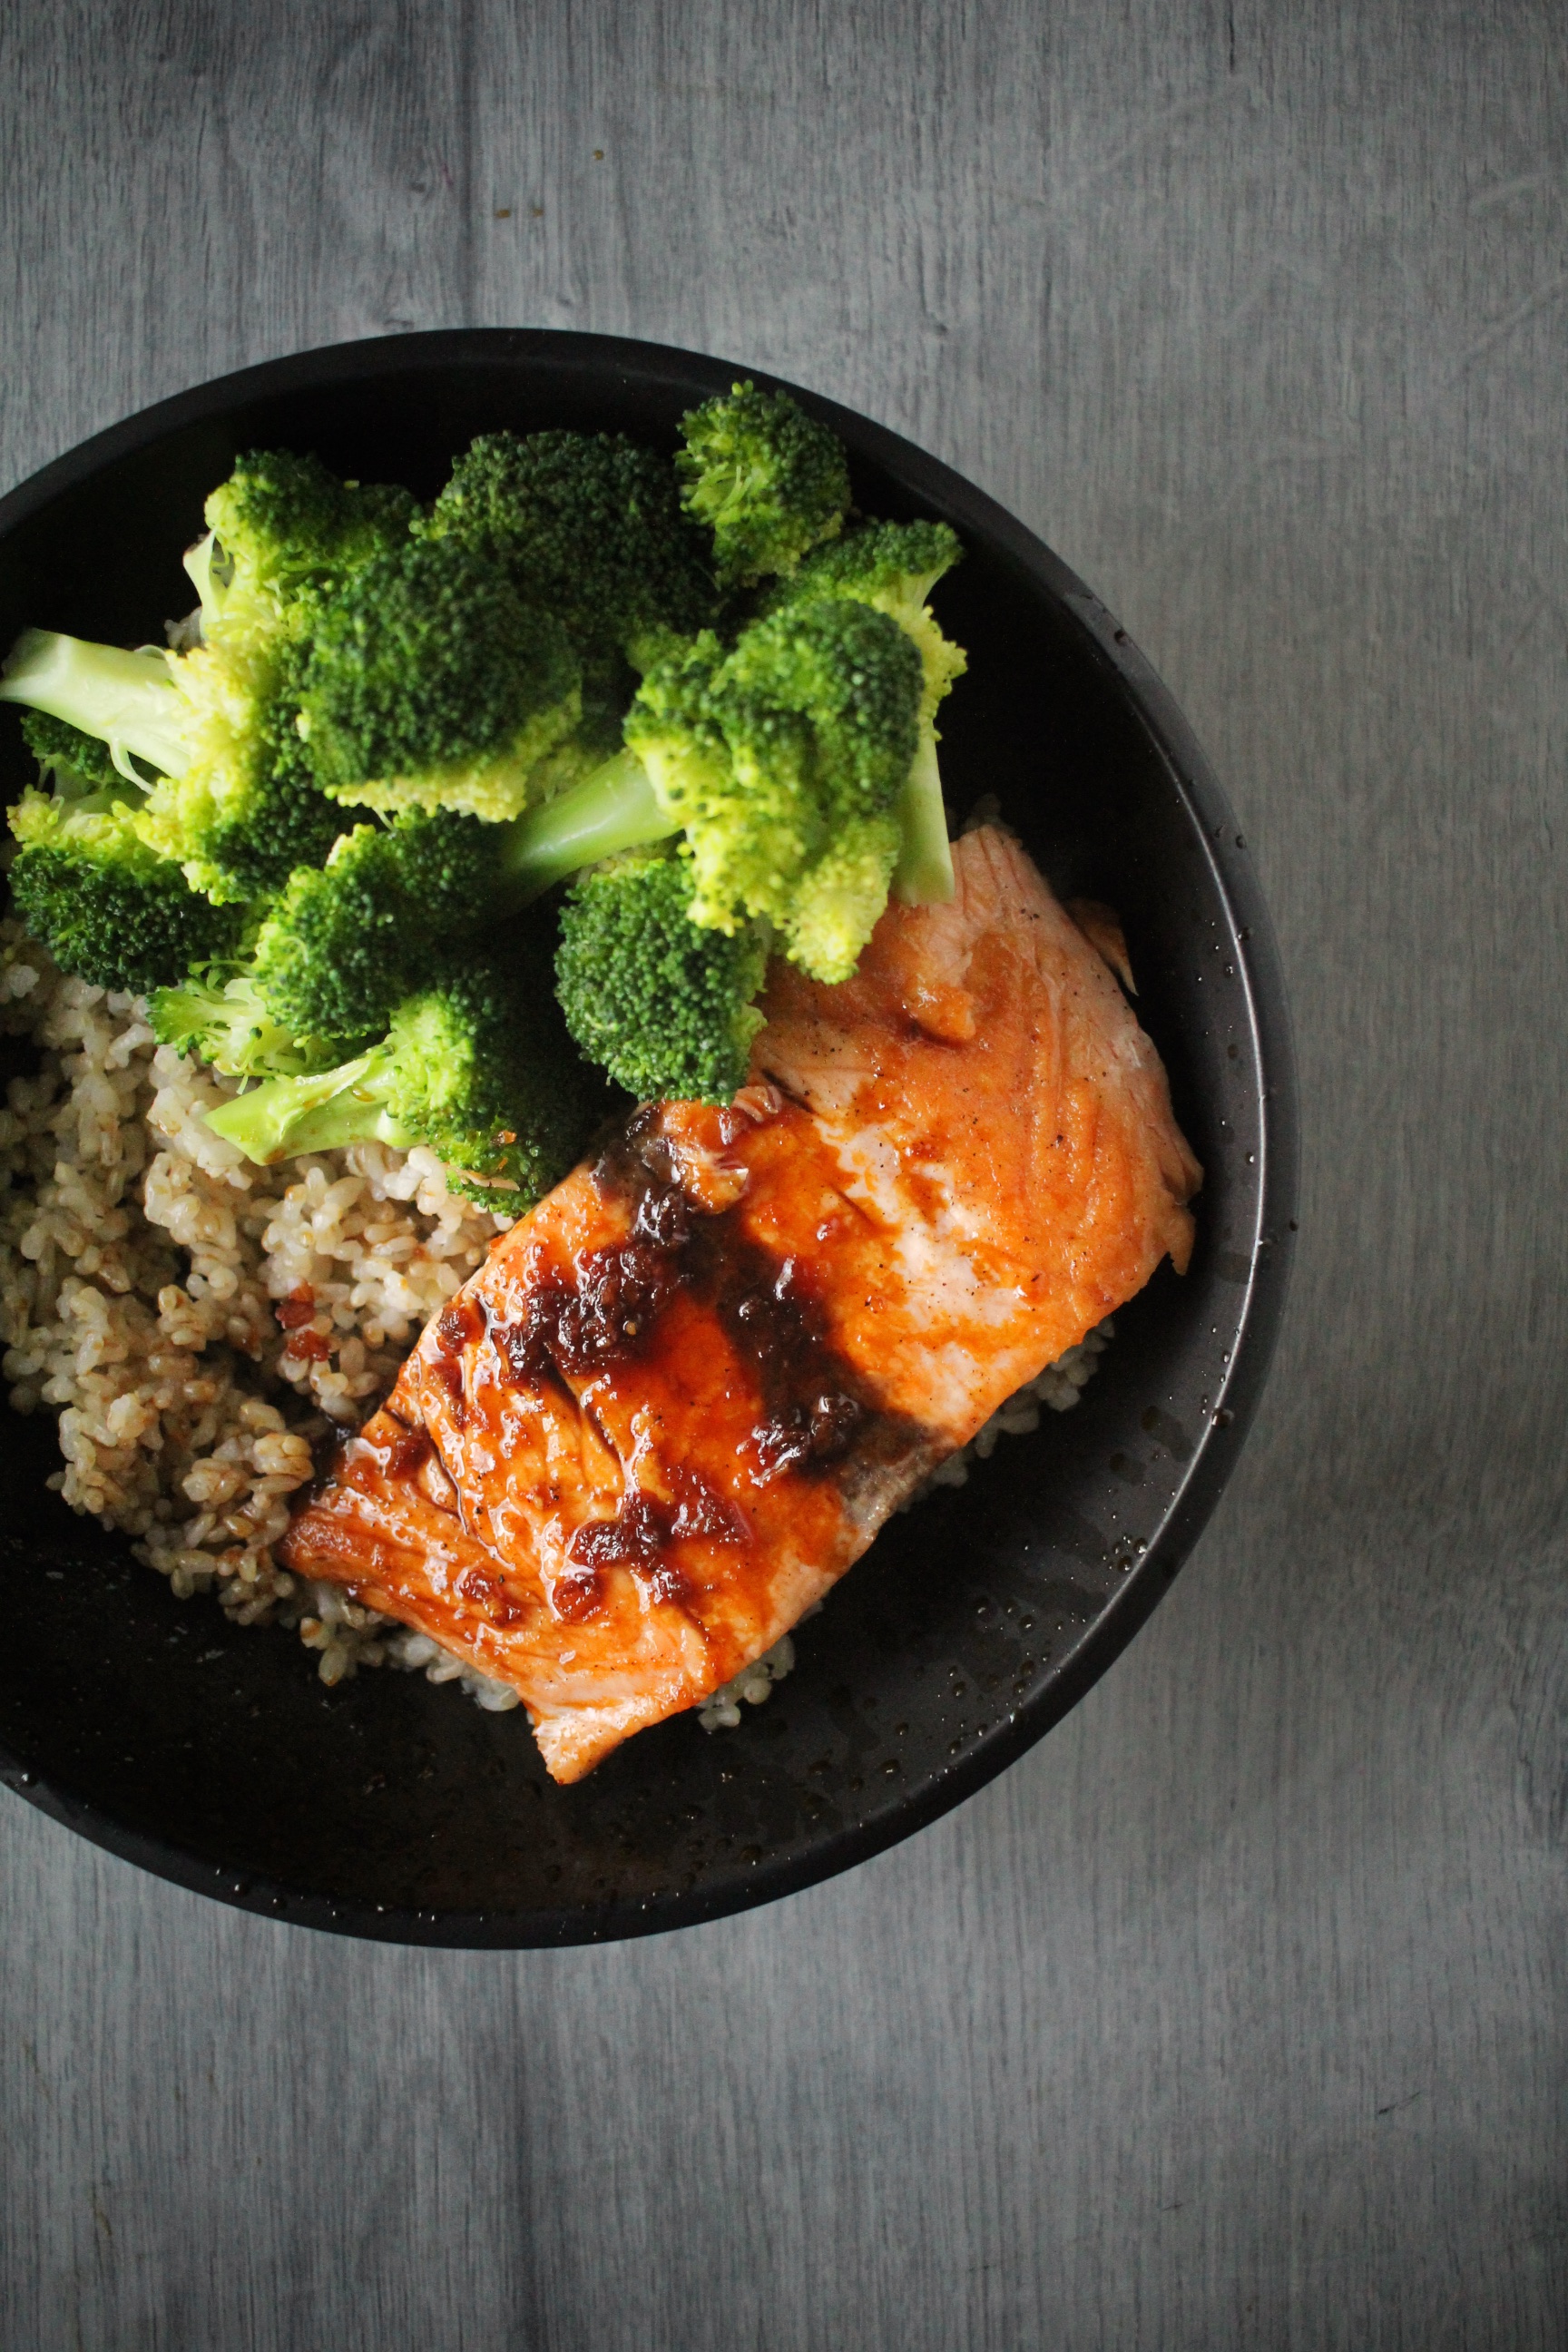 salmon & broccoli rice bowls with citrus-shoyu glaze